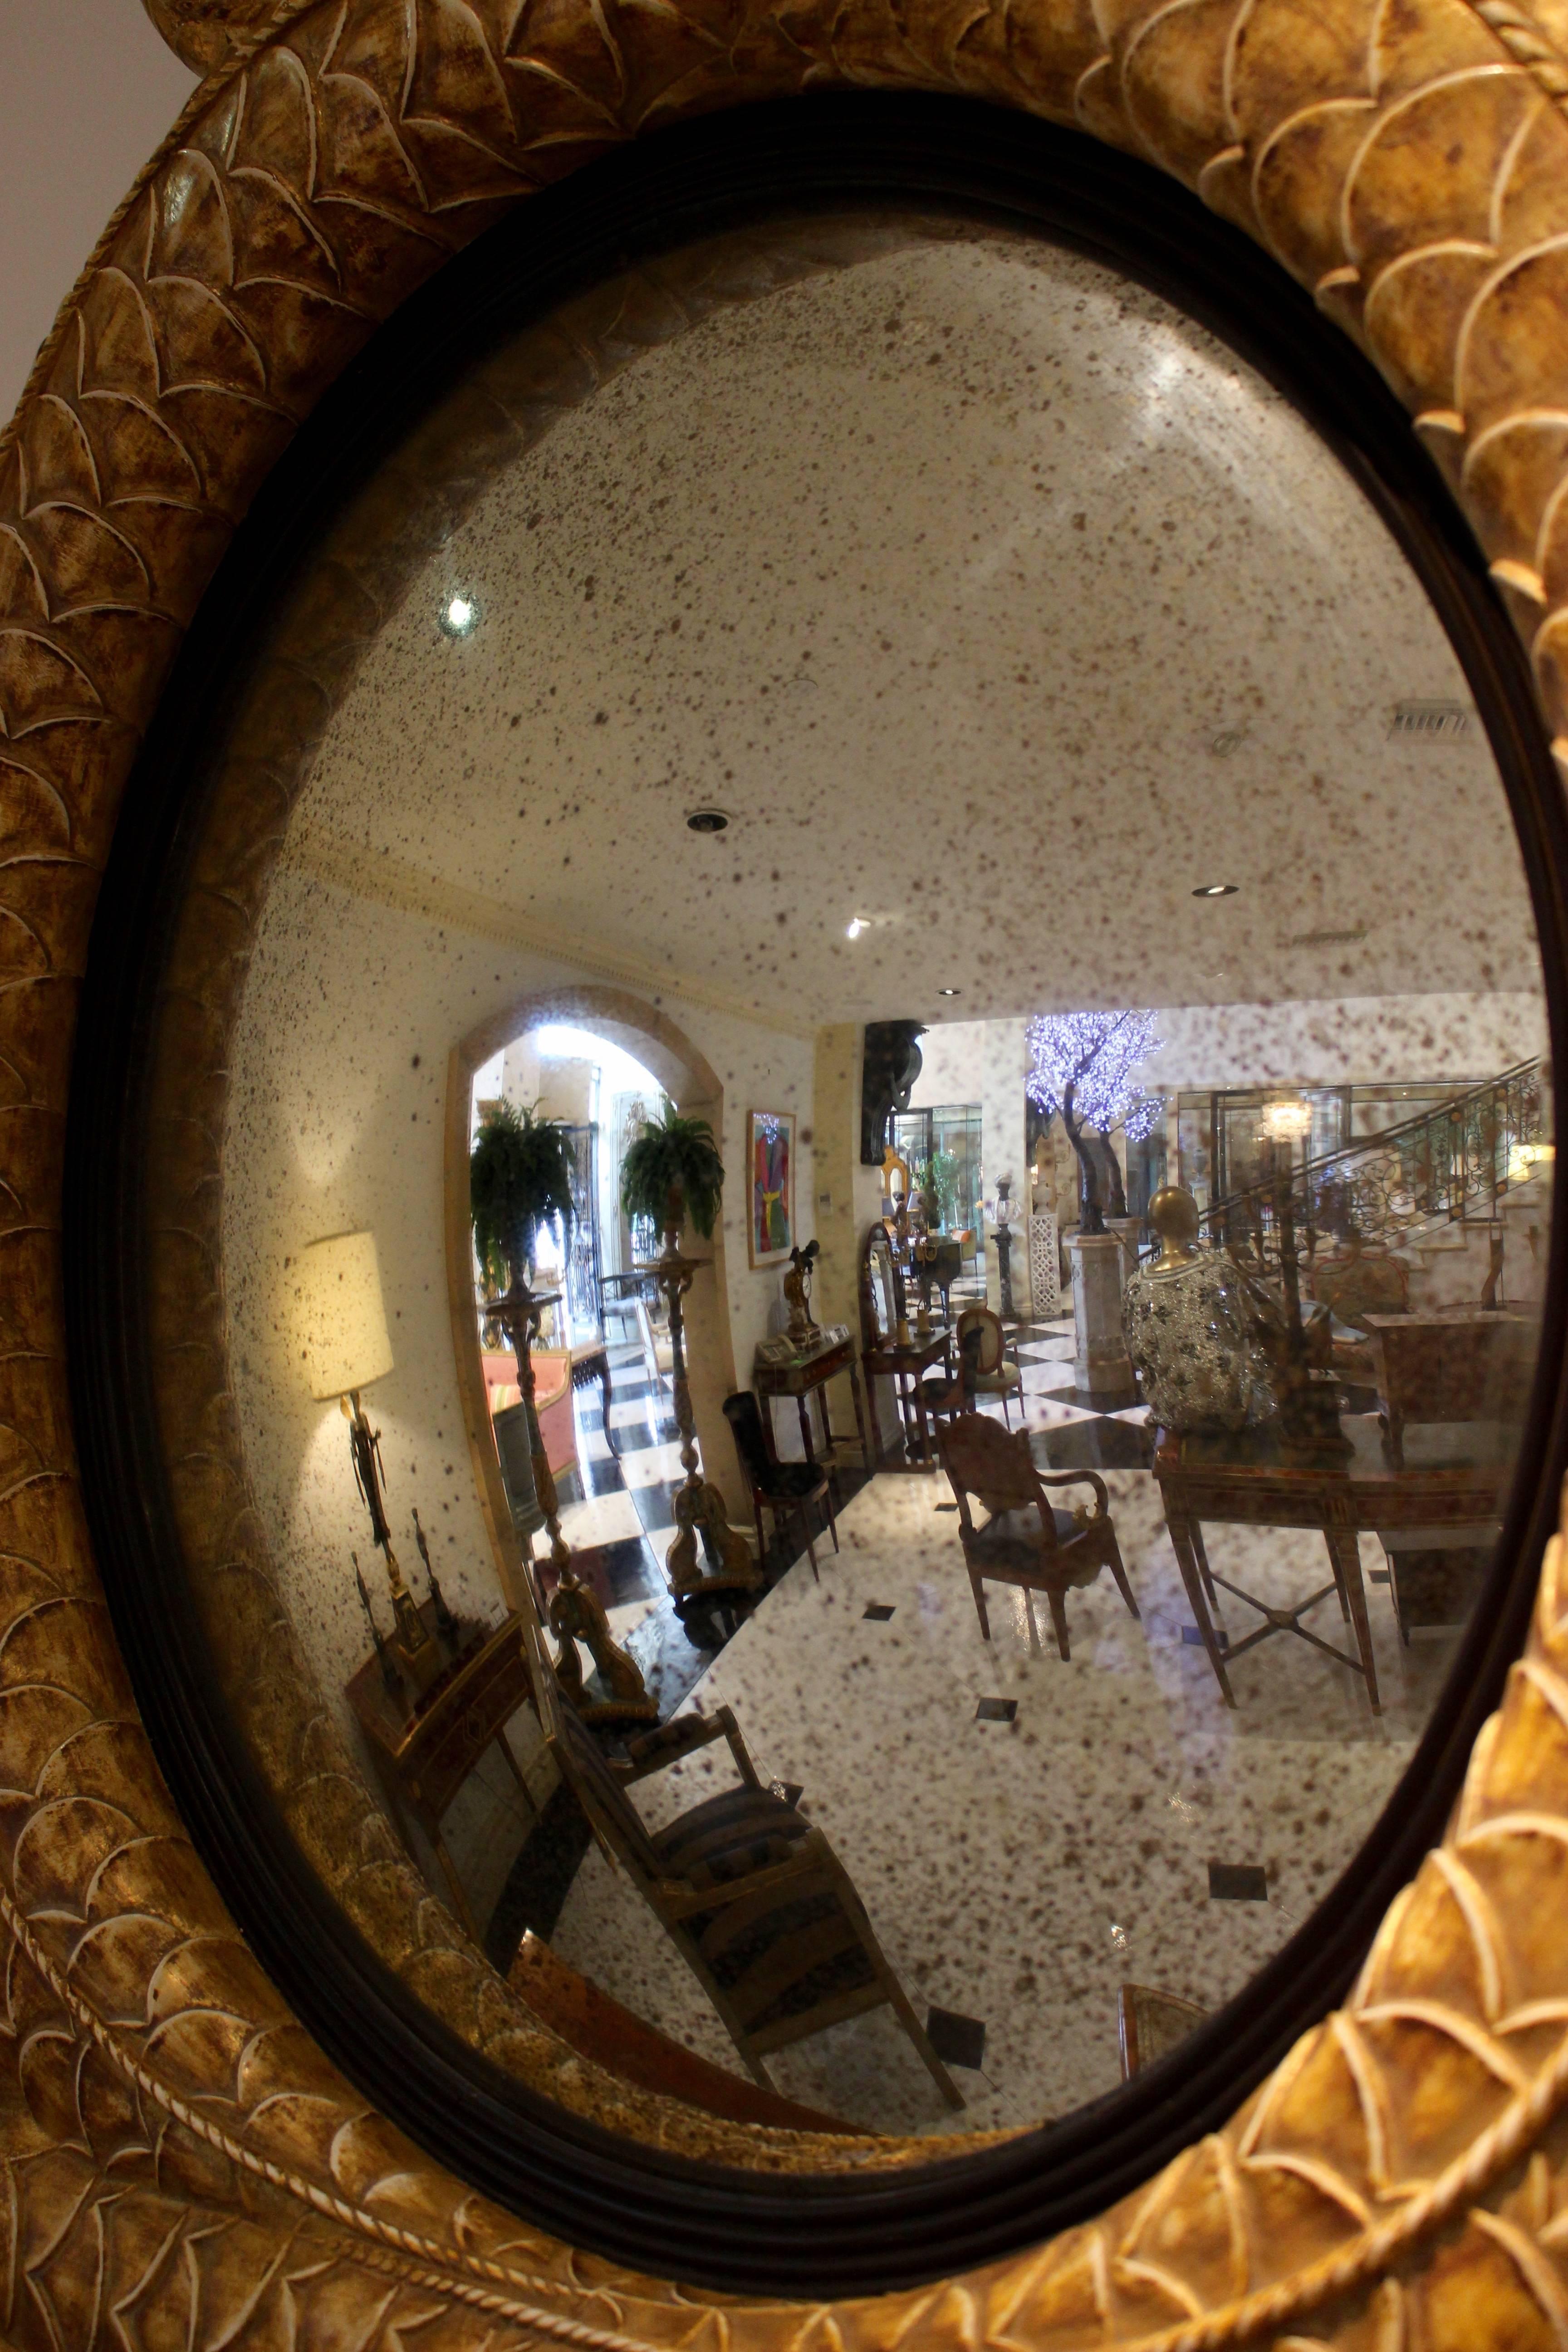 Paire de miroirs dauphins convexes de style Regency en bois doré et ébène parcellaire du XXIe siècle. Chaque miroir présente une plaque ronde convexe vieillie dans un cadre intérieur ébénisé. Le plus grand cadre en bois doré a la forme de deux